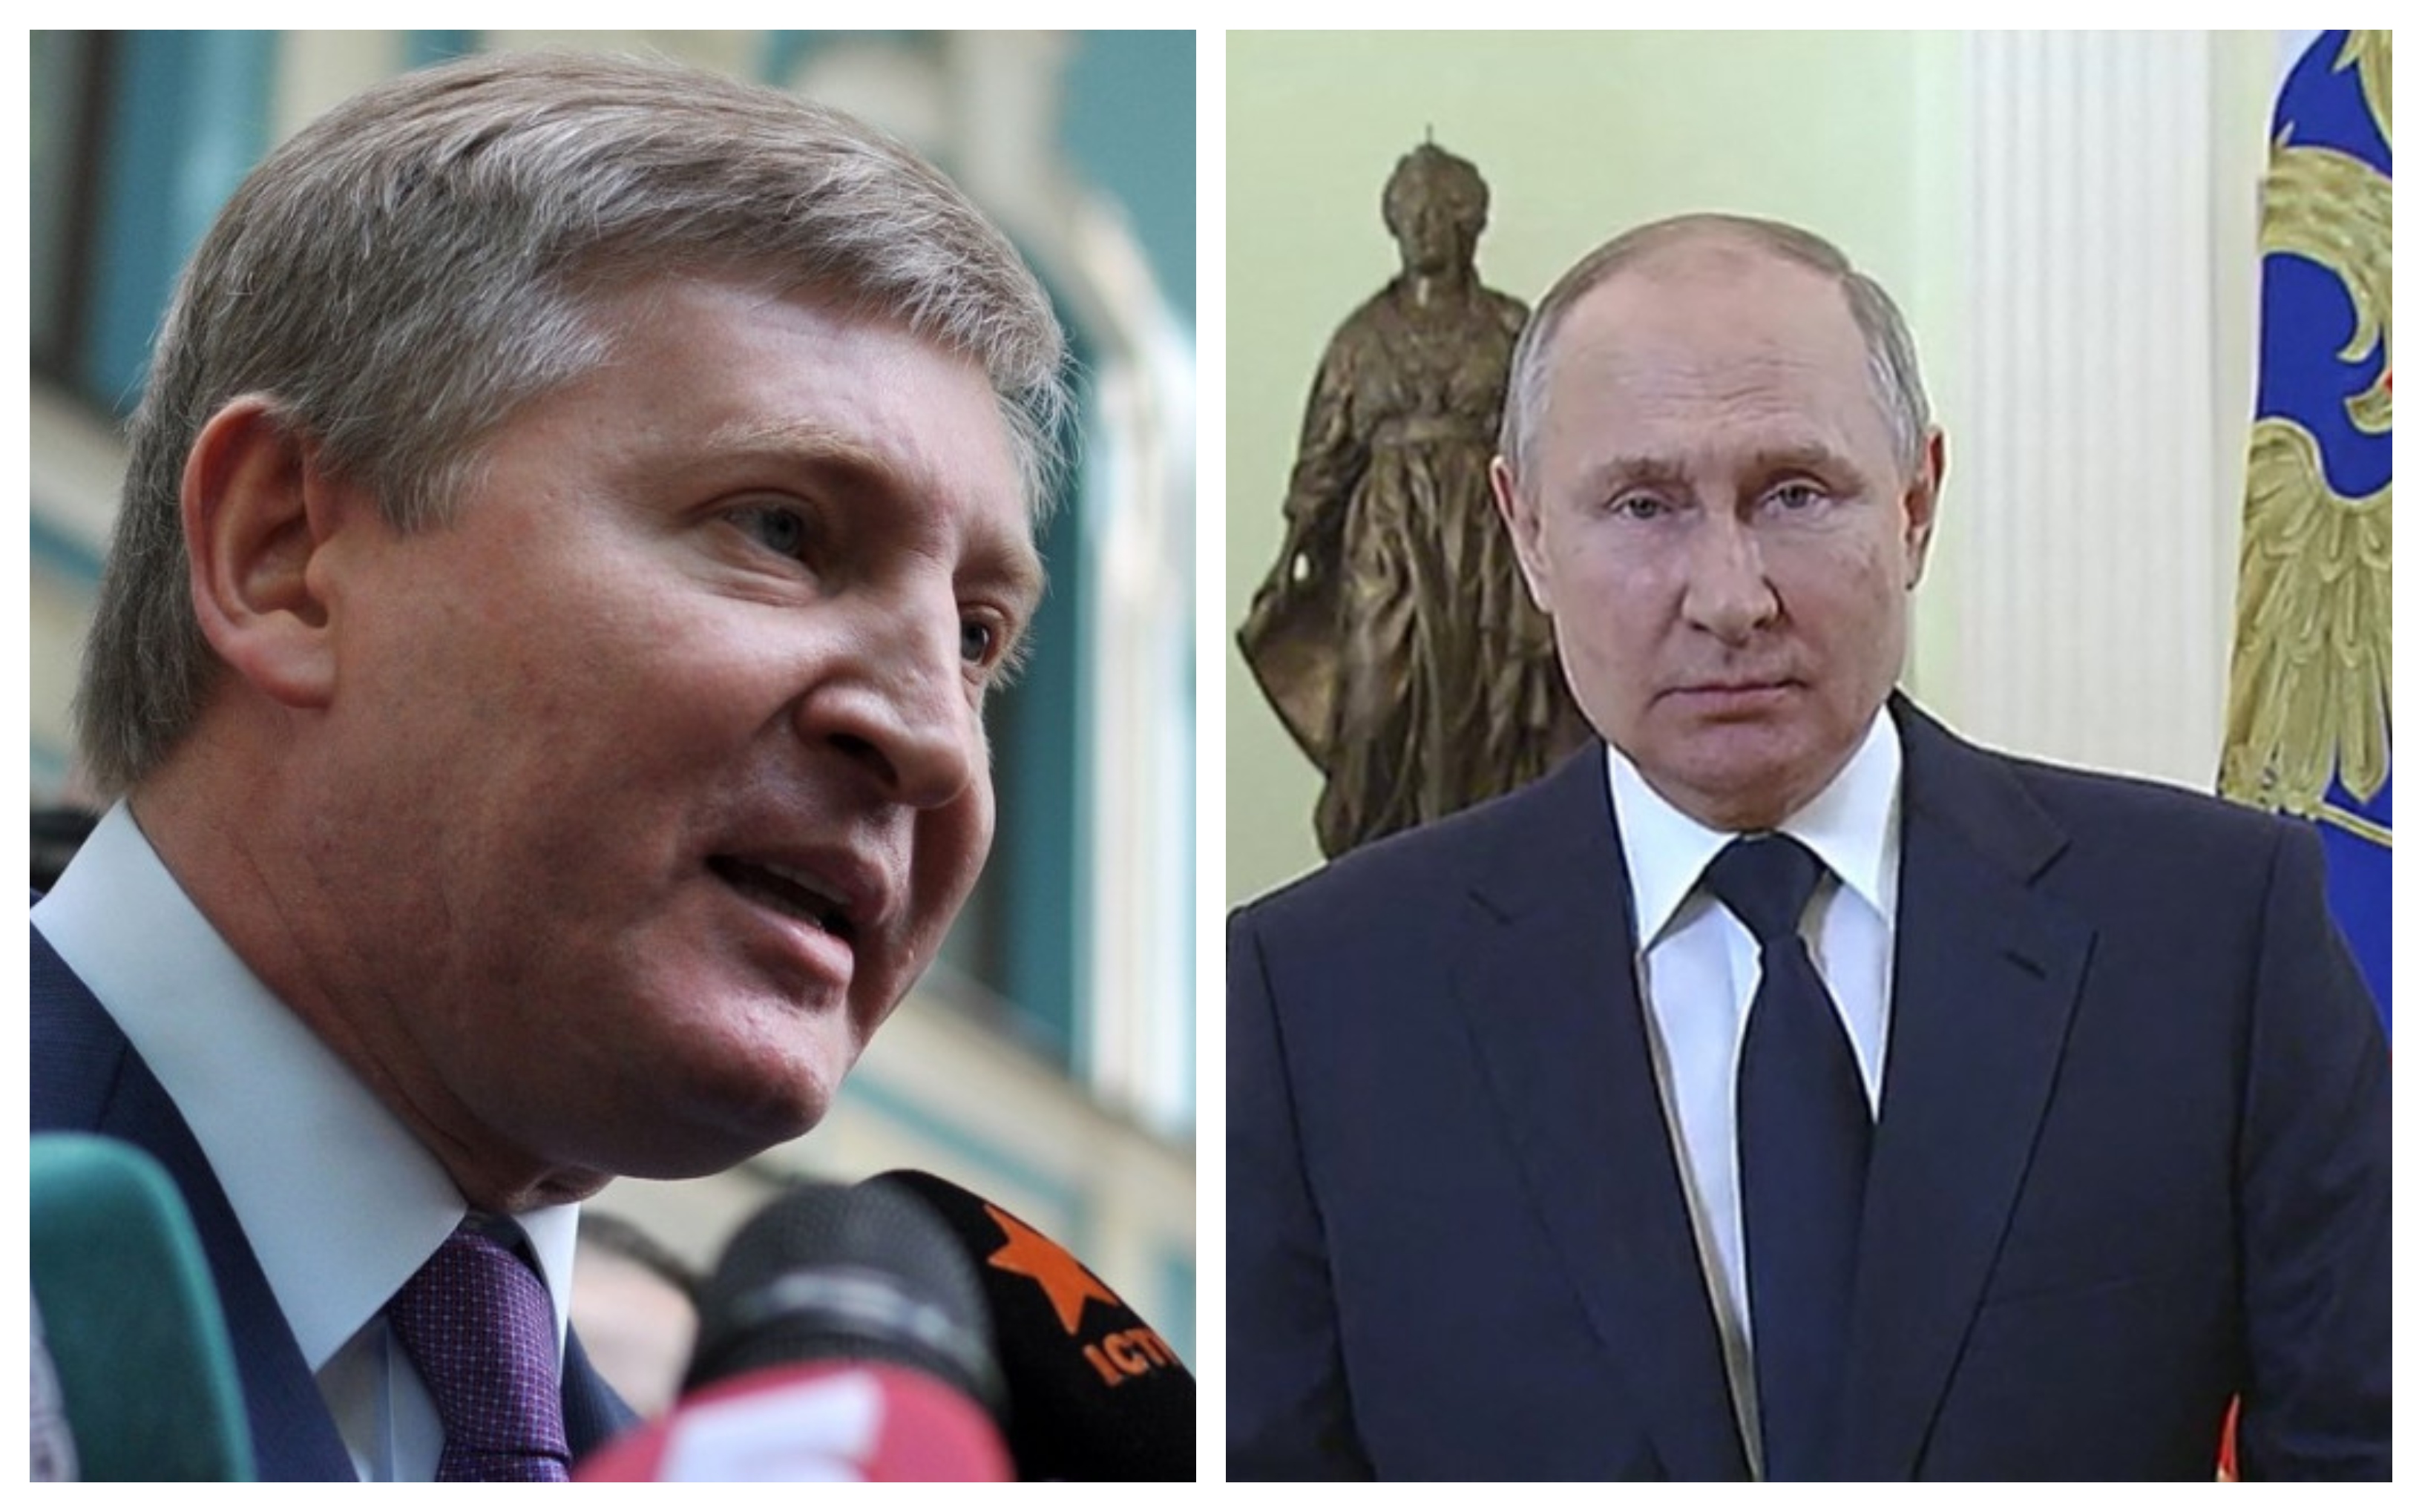 Dovada că Rinat Akhmetov îl lucra pe Vladimir Putin încă din 2014, pe vremea când era considerat aliatul său